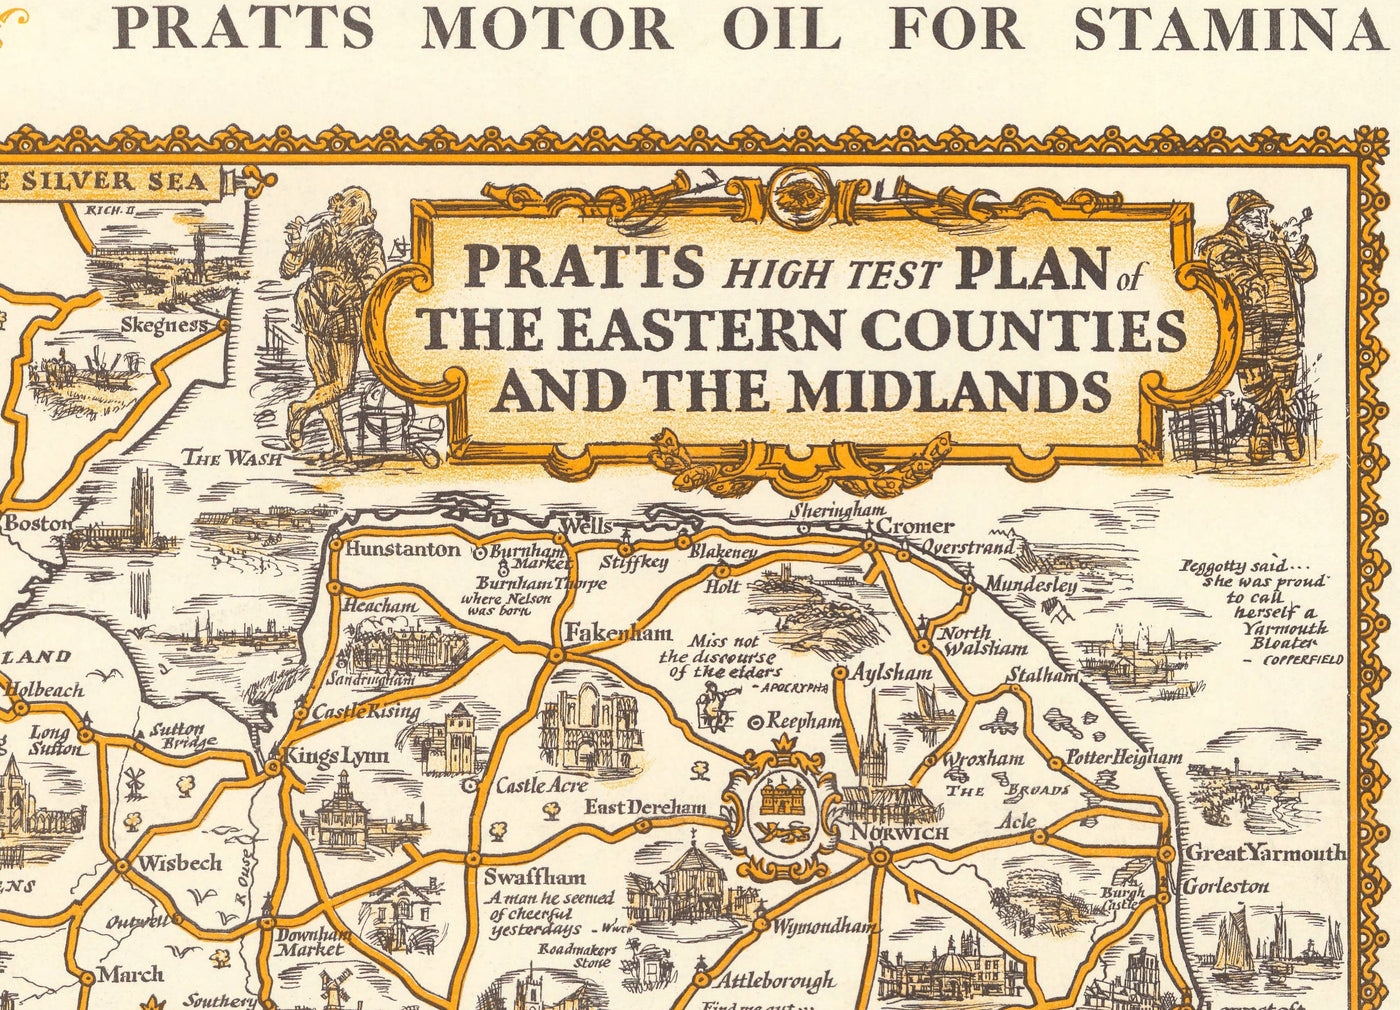 Pratts High Test Plan of the Midlands 1932 - Essex, Oxford, Birmingham - Old Vintage Motoring Car Map - Esso, Standard Oil